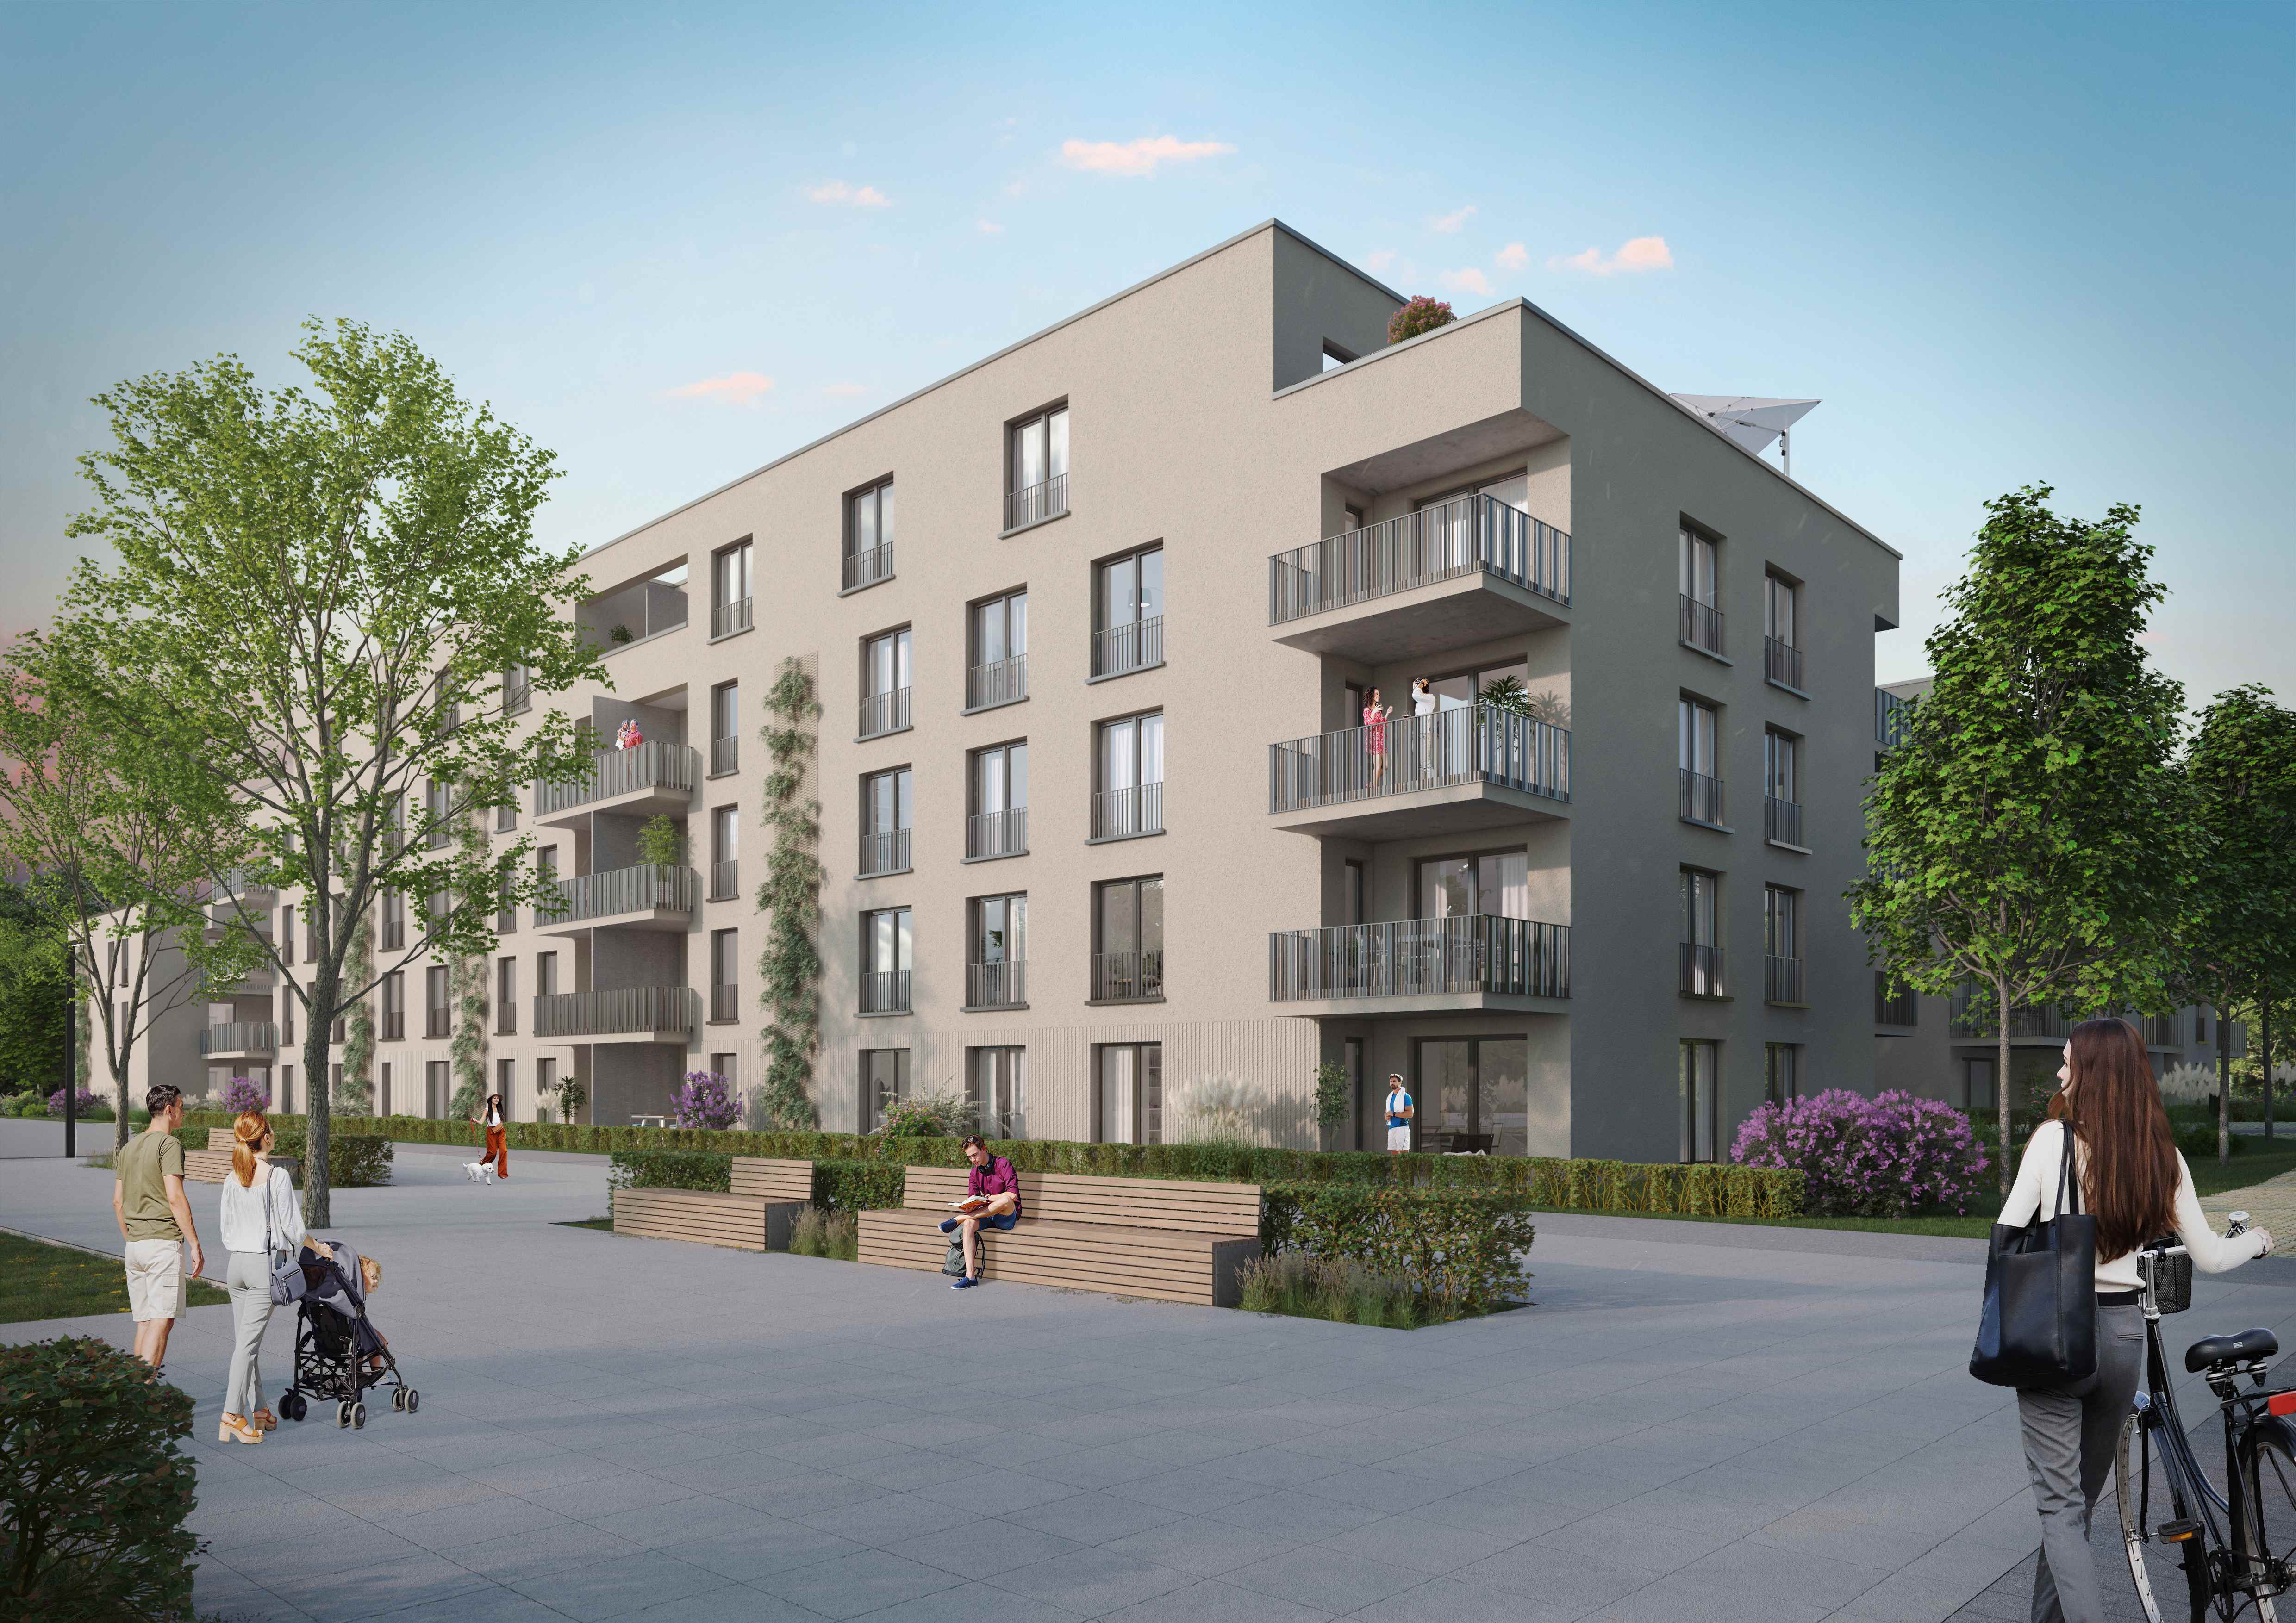 Instone startet mit dem Bau von 105 überwiegend geförderten Mietwohnungen im „Neckar.Au Viertel“ für die Stadt Rottenburg am Neckar